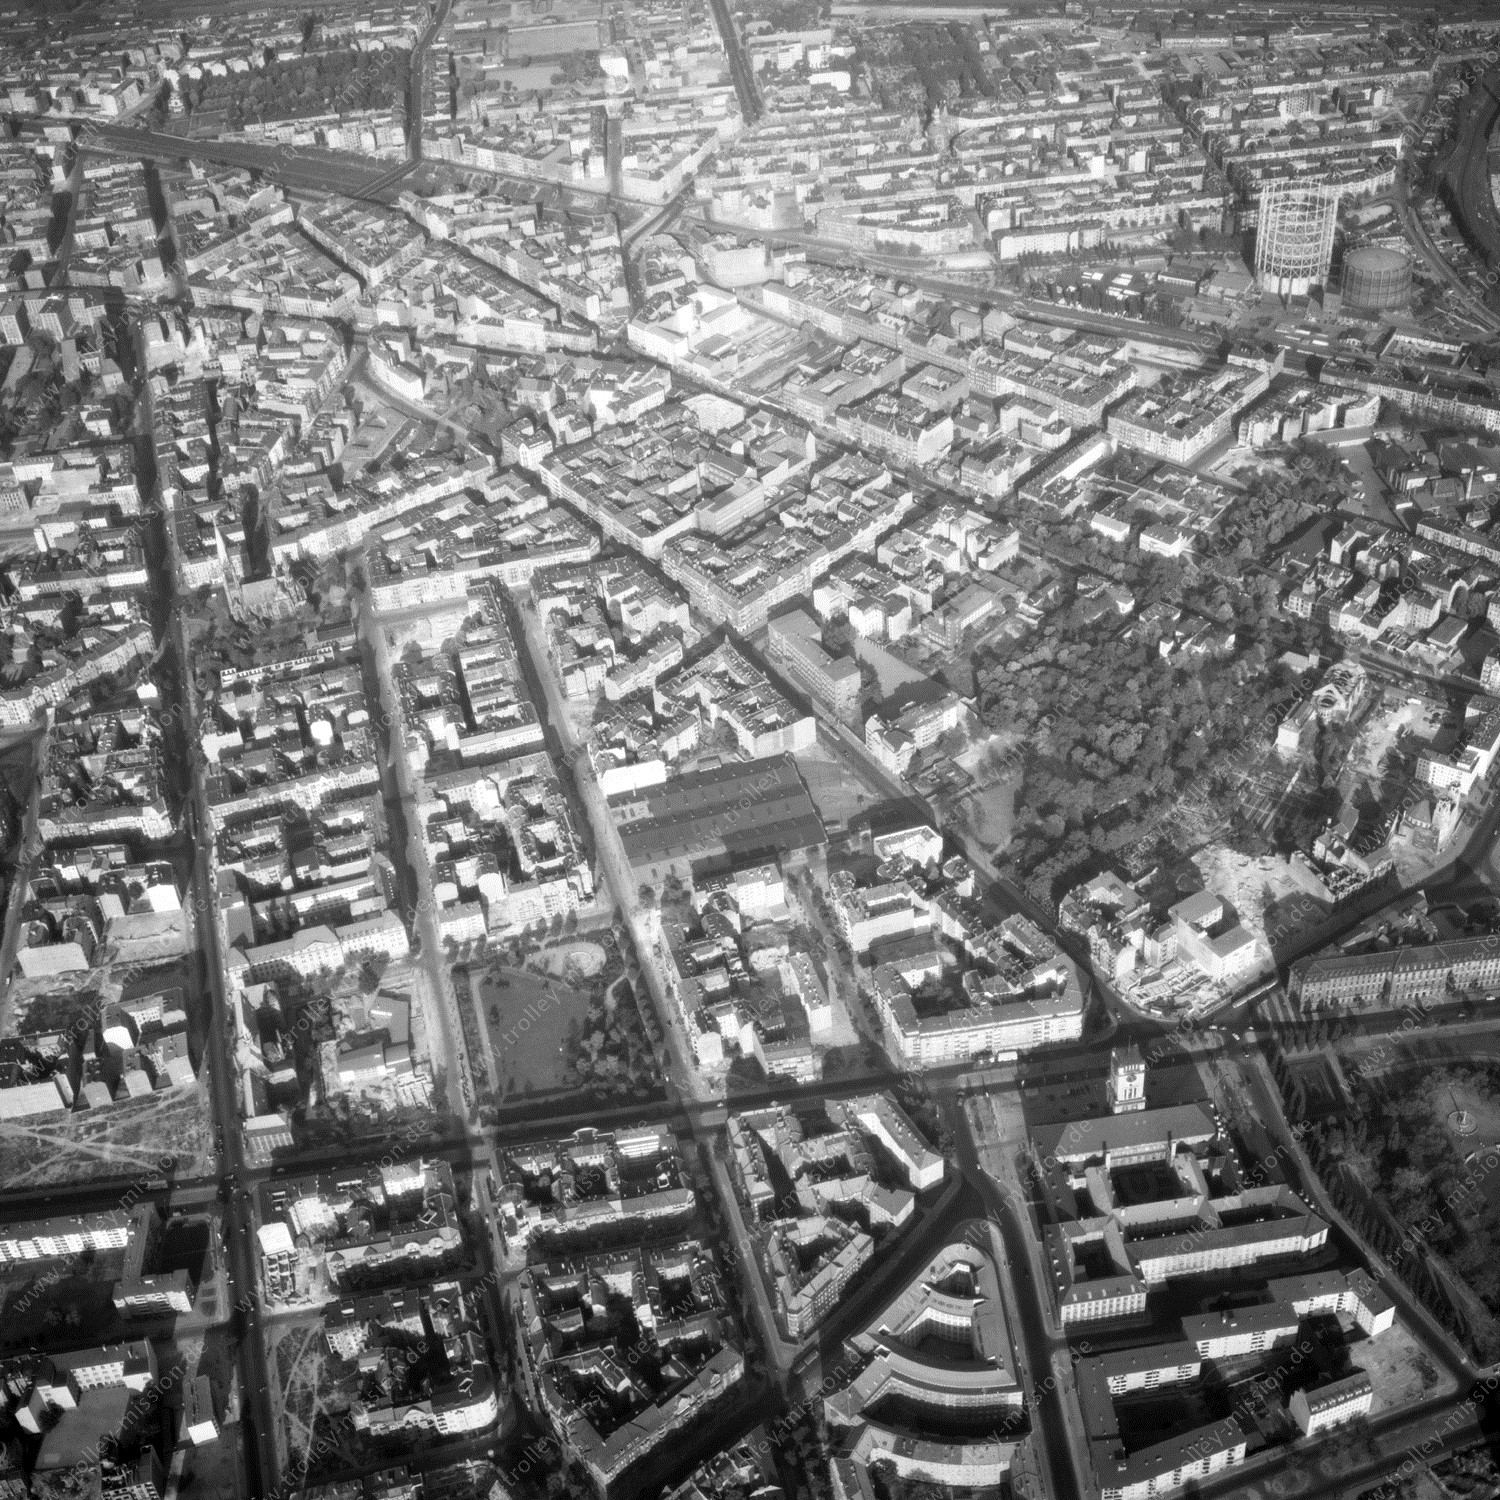 Alte Fotos und Luftbilder von Berlin - Luftbildaufnahme Nr. 02 - Historische Luftaufnahmen von West-Berlin aus dem Jahr 1954 - Flugstrecke Foxtrot